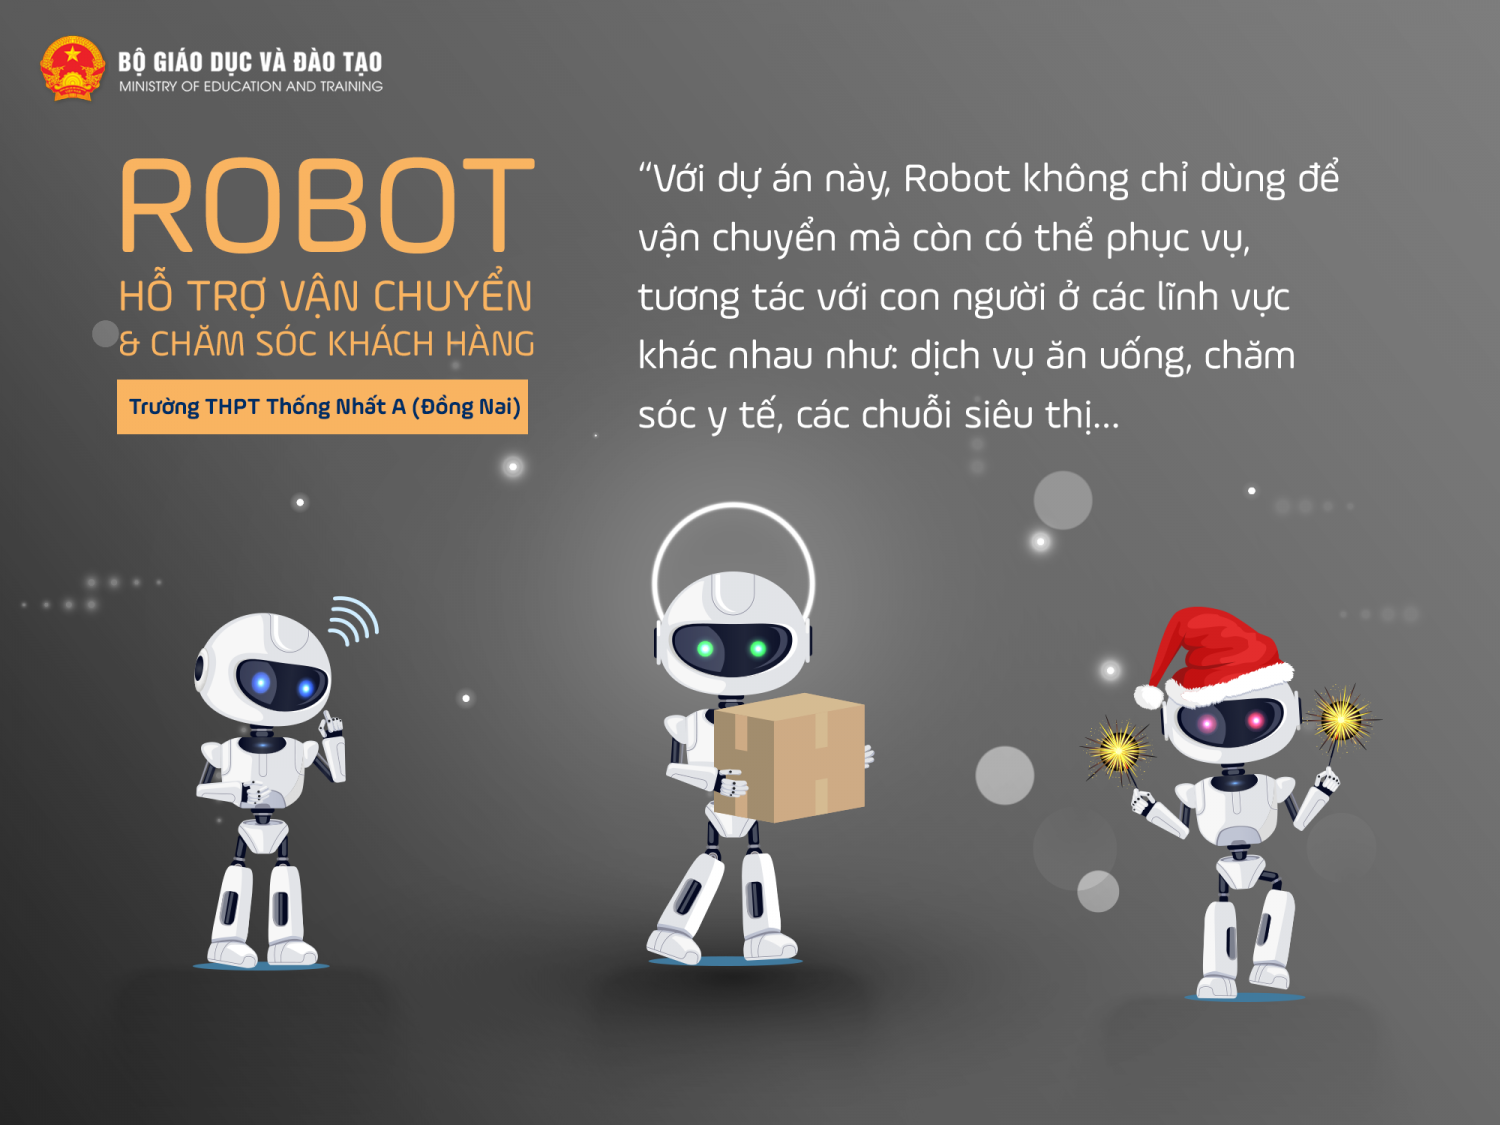 Dự án "Robot hỗ trợ vận chuyển và chăm sóc khách hàng"